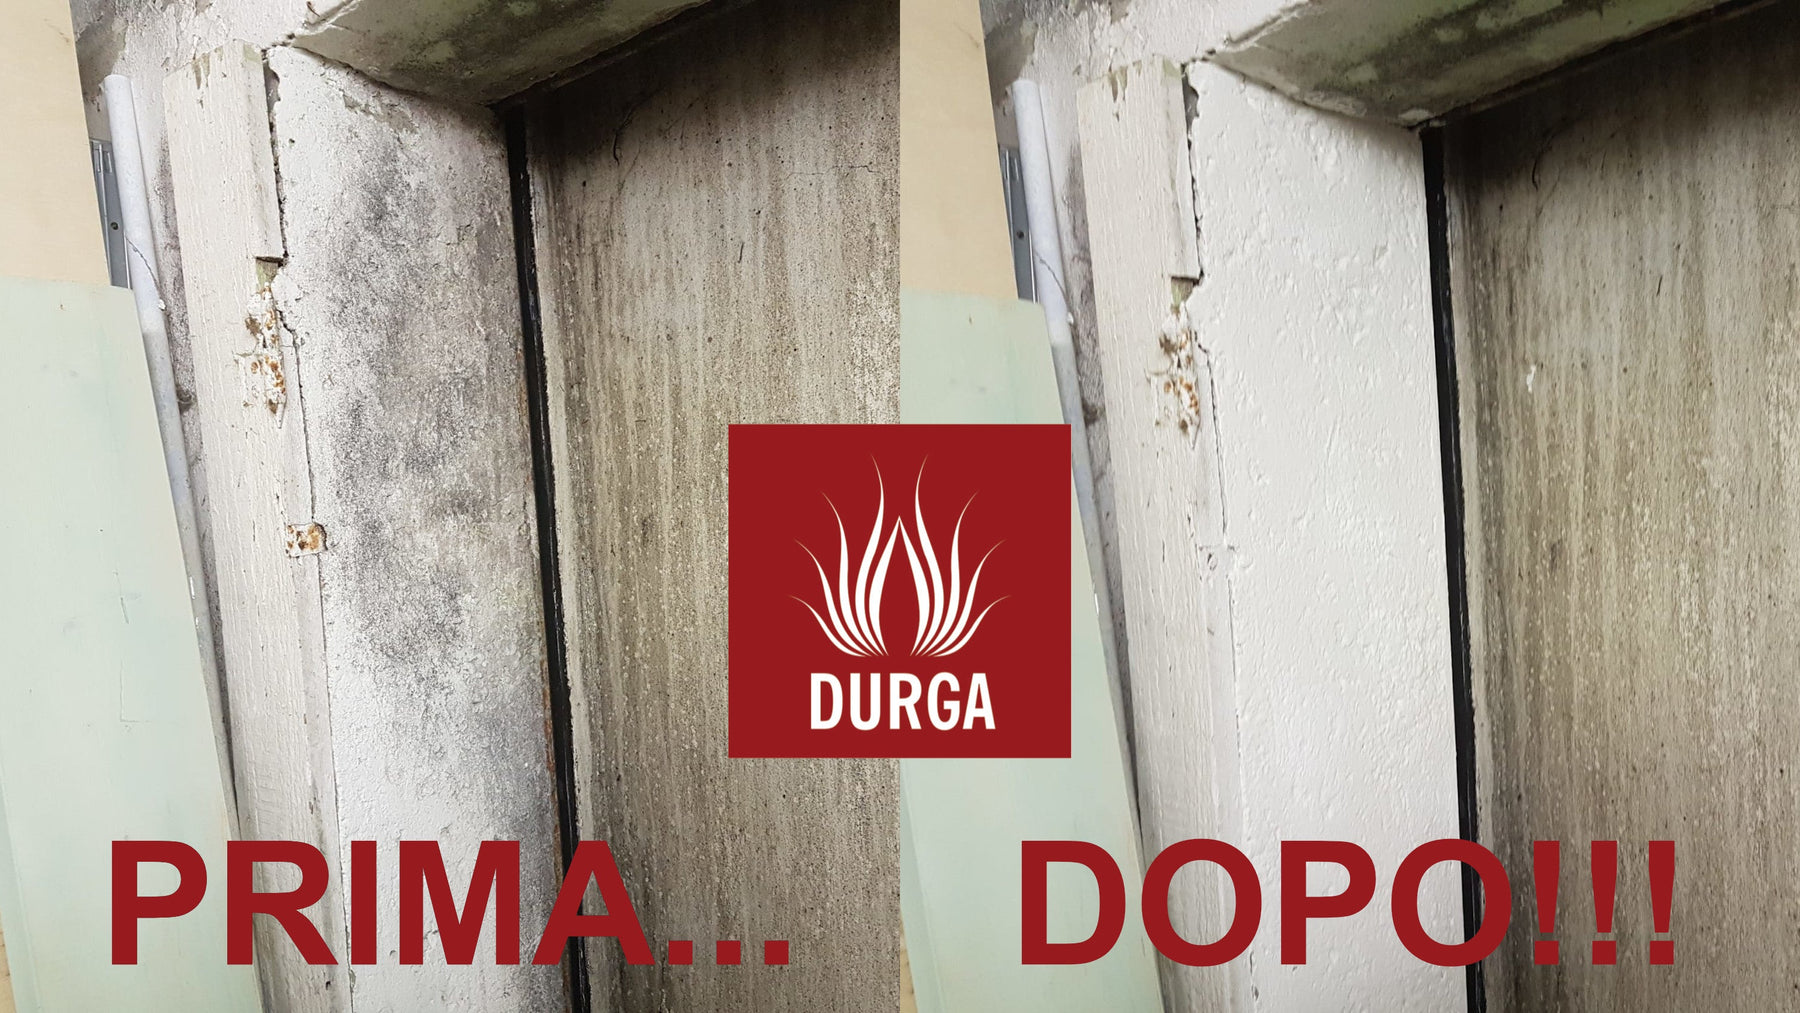 Come trattare la muffa sui muri? La guida definitiva di Durgastore! Durga